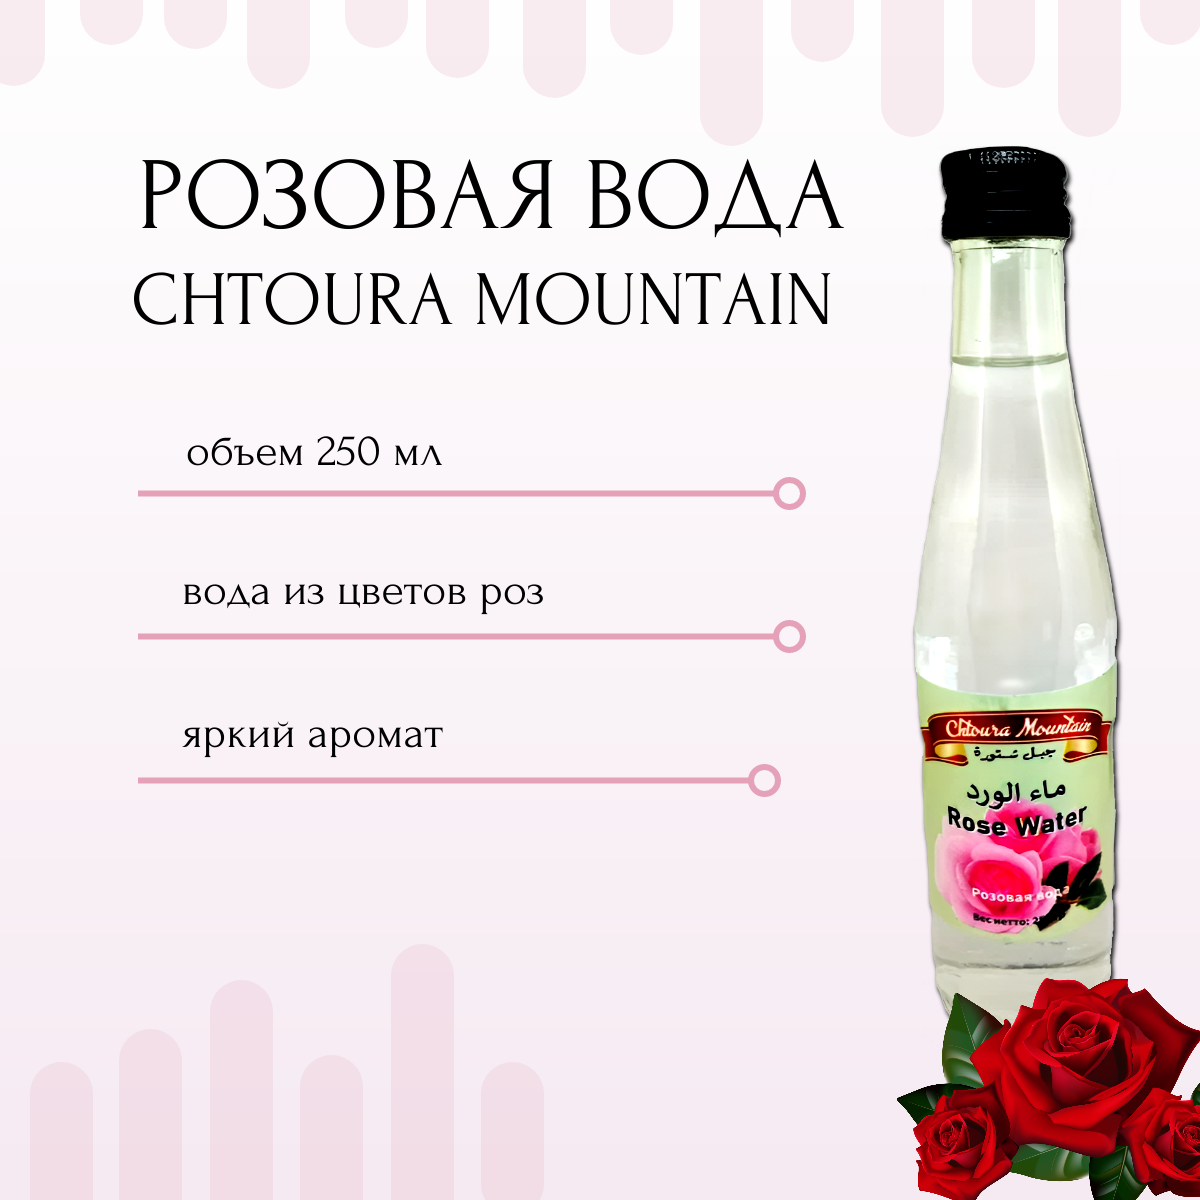 Вода из лепестков роз ( розовая вода) / Rose Water 250 гр. CHTOURA MOUNTAIN  Ливан